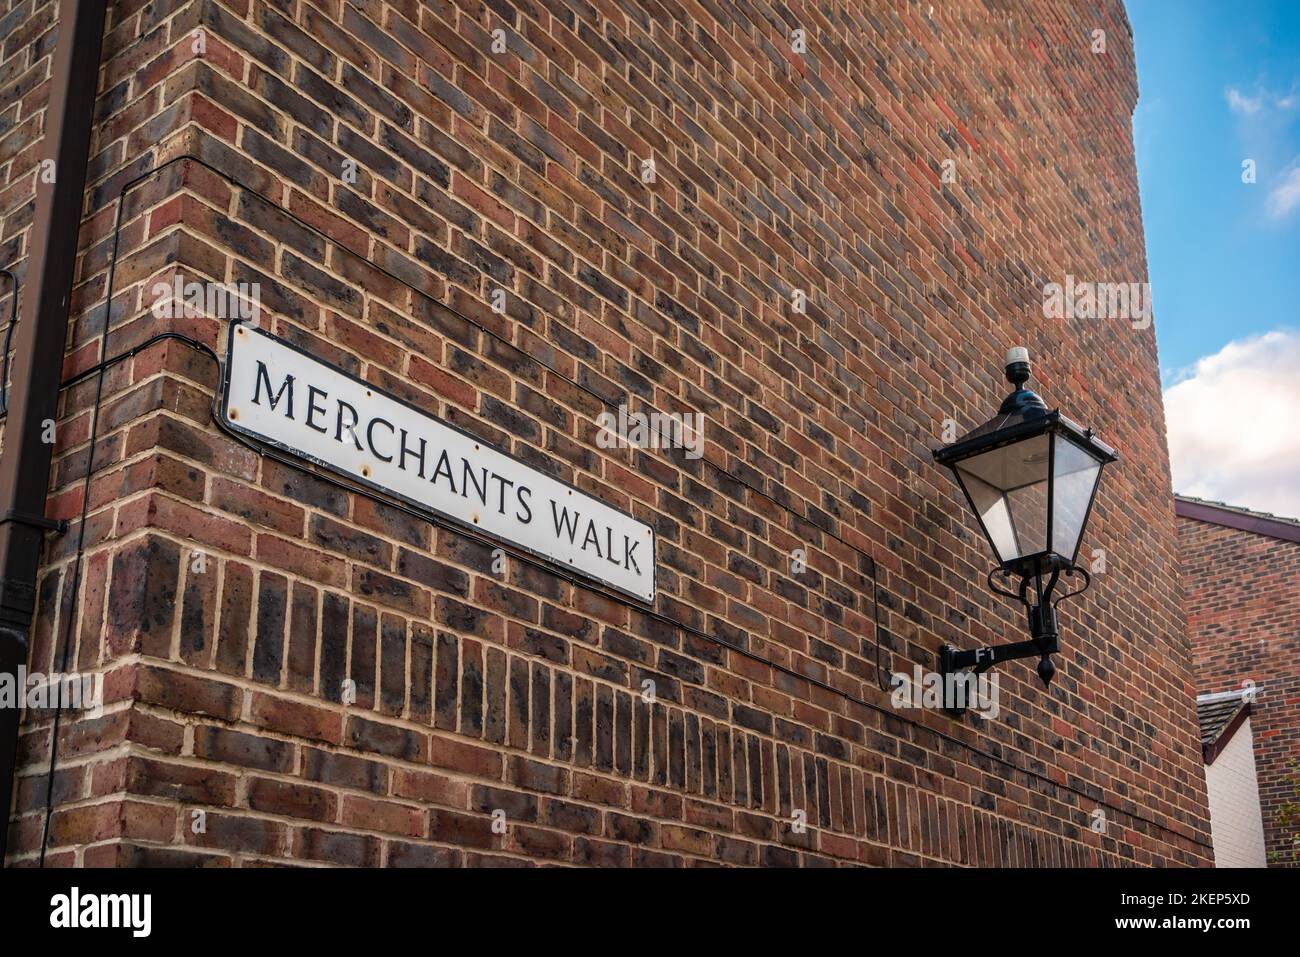 Merchants Walk Street segno situato nella parte vecchia città storica di Southampton, Hampshire, Inghilterra, Regno Unito Foto Stock